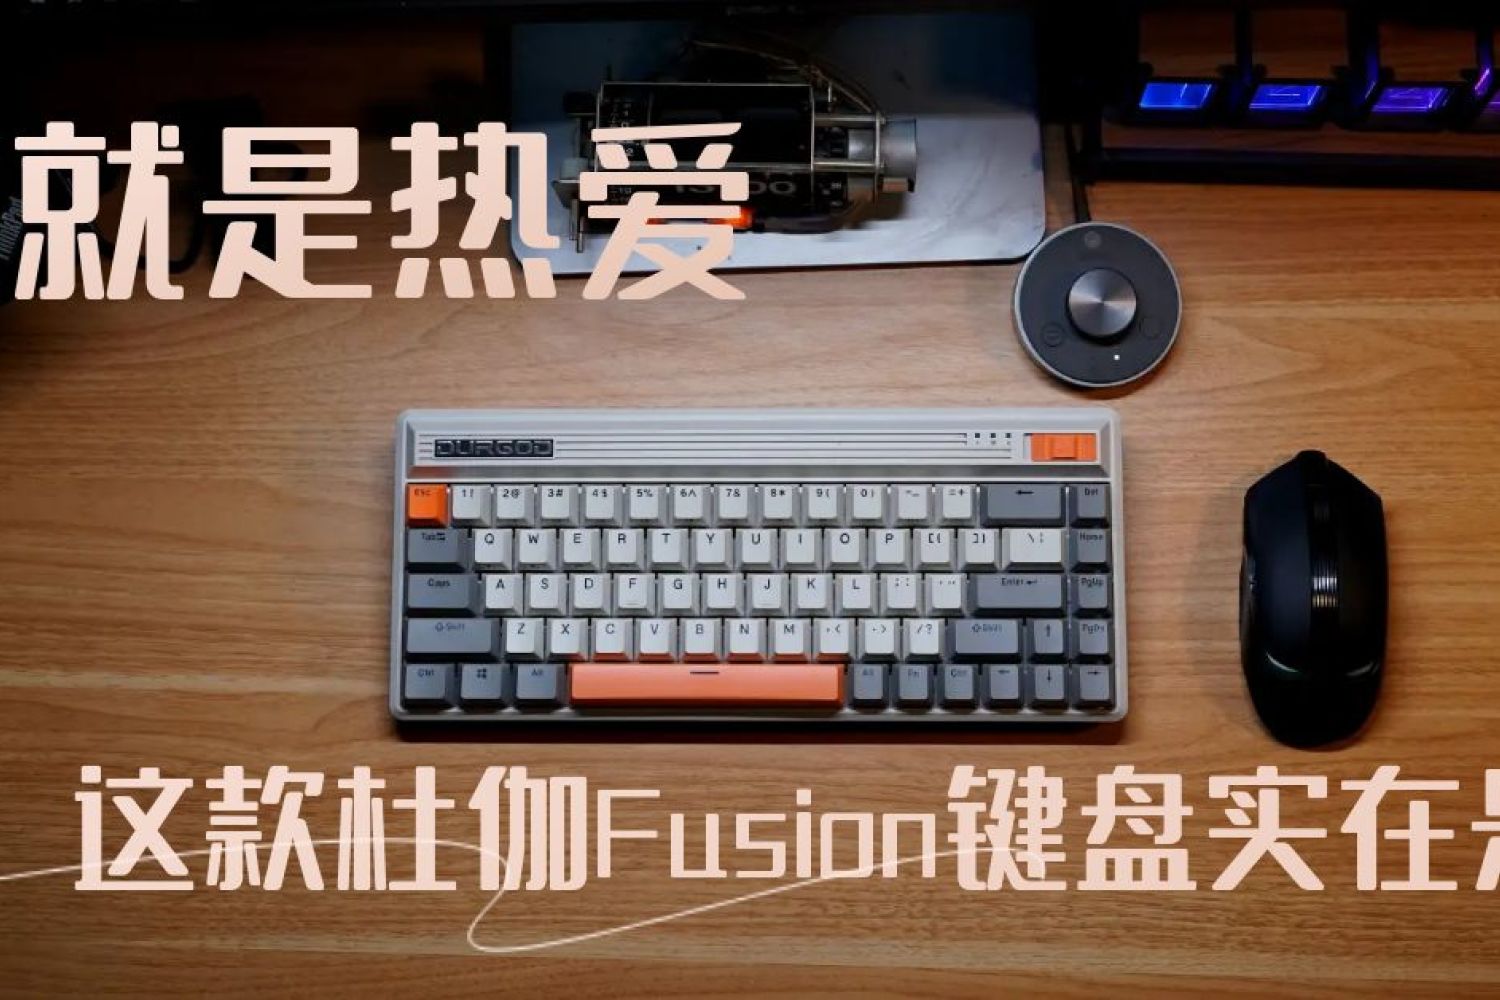 喜欢就是热爱，这款杜伽Fusion键盘实在是漂亮